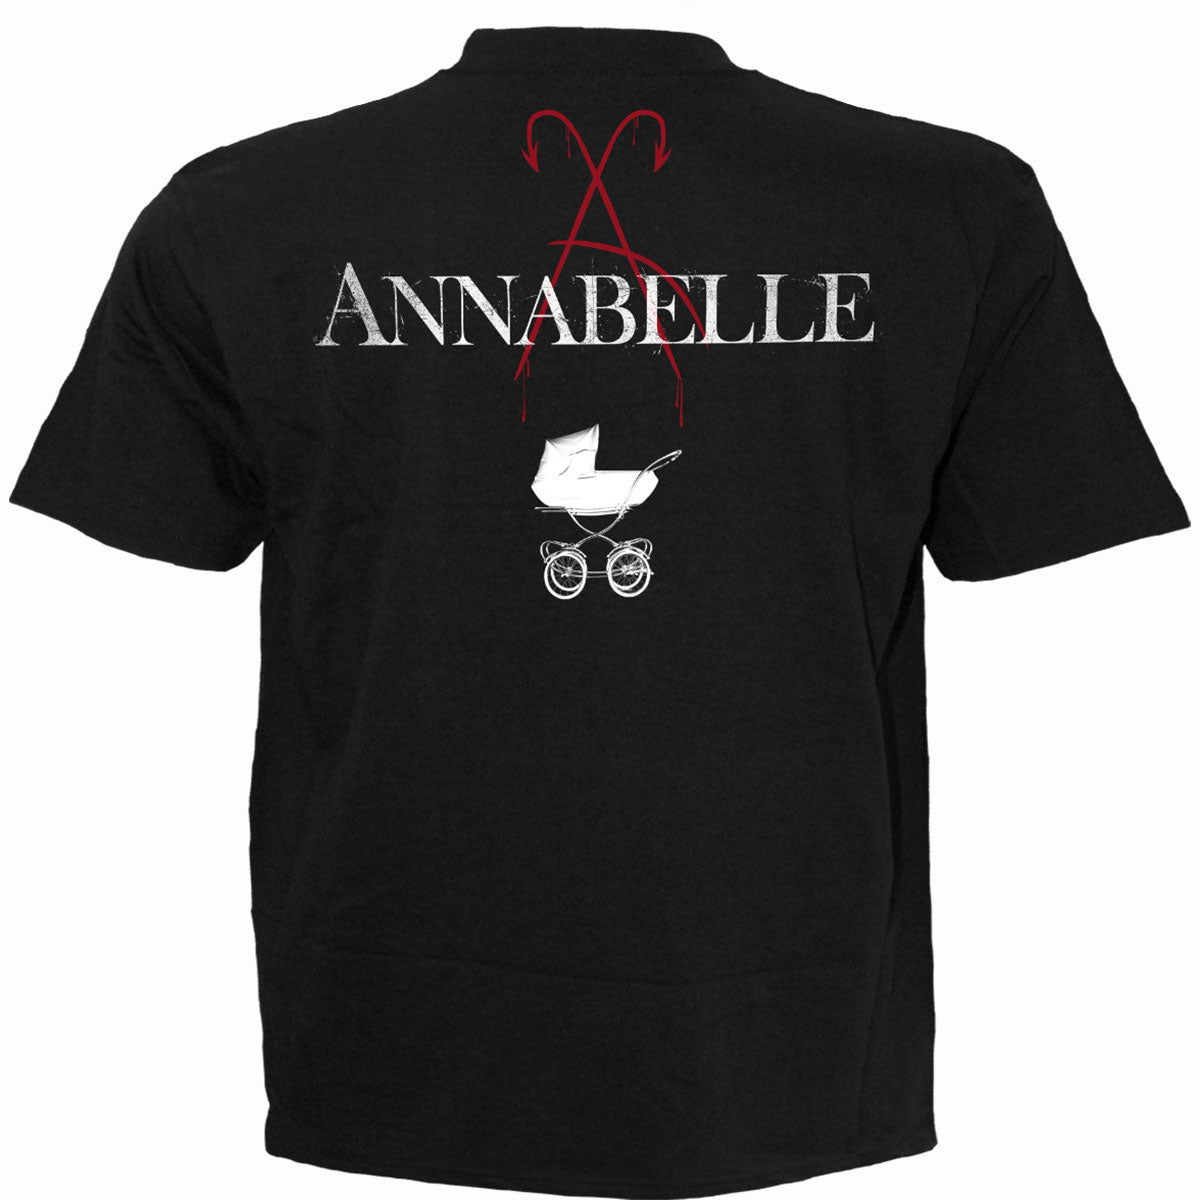 ANNABELLE - FOUND YOU - T-Shirt Schwarz